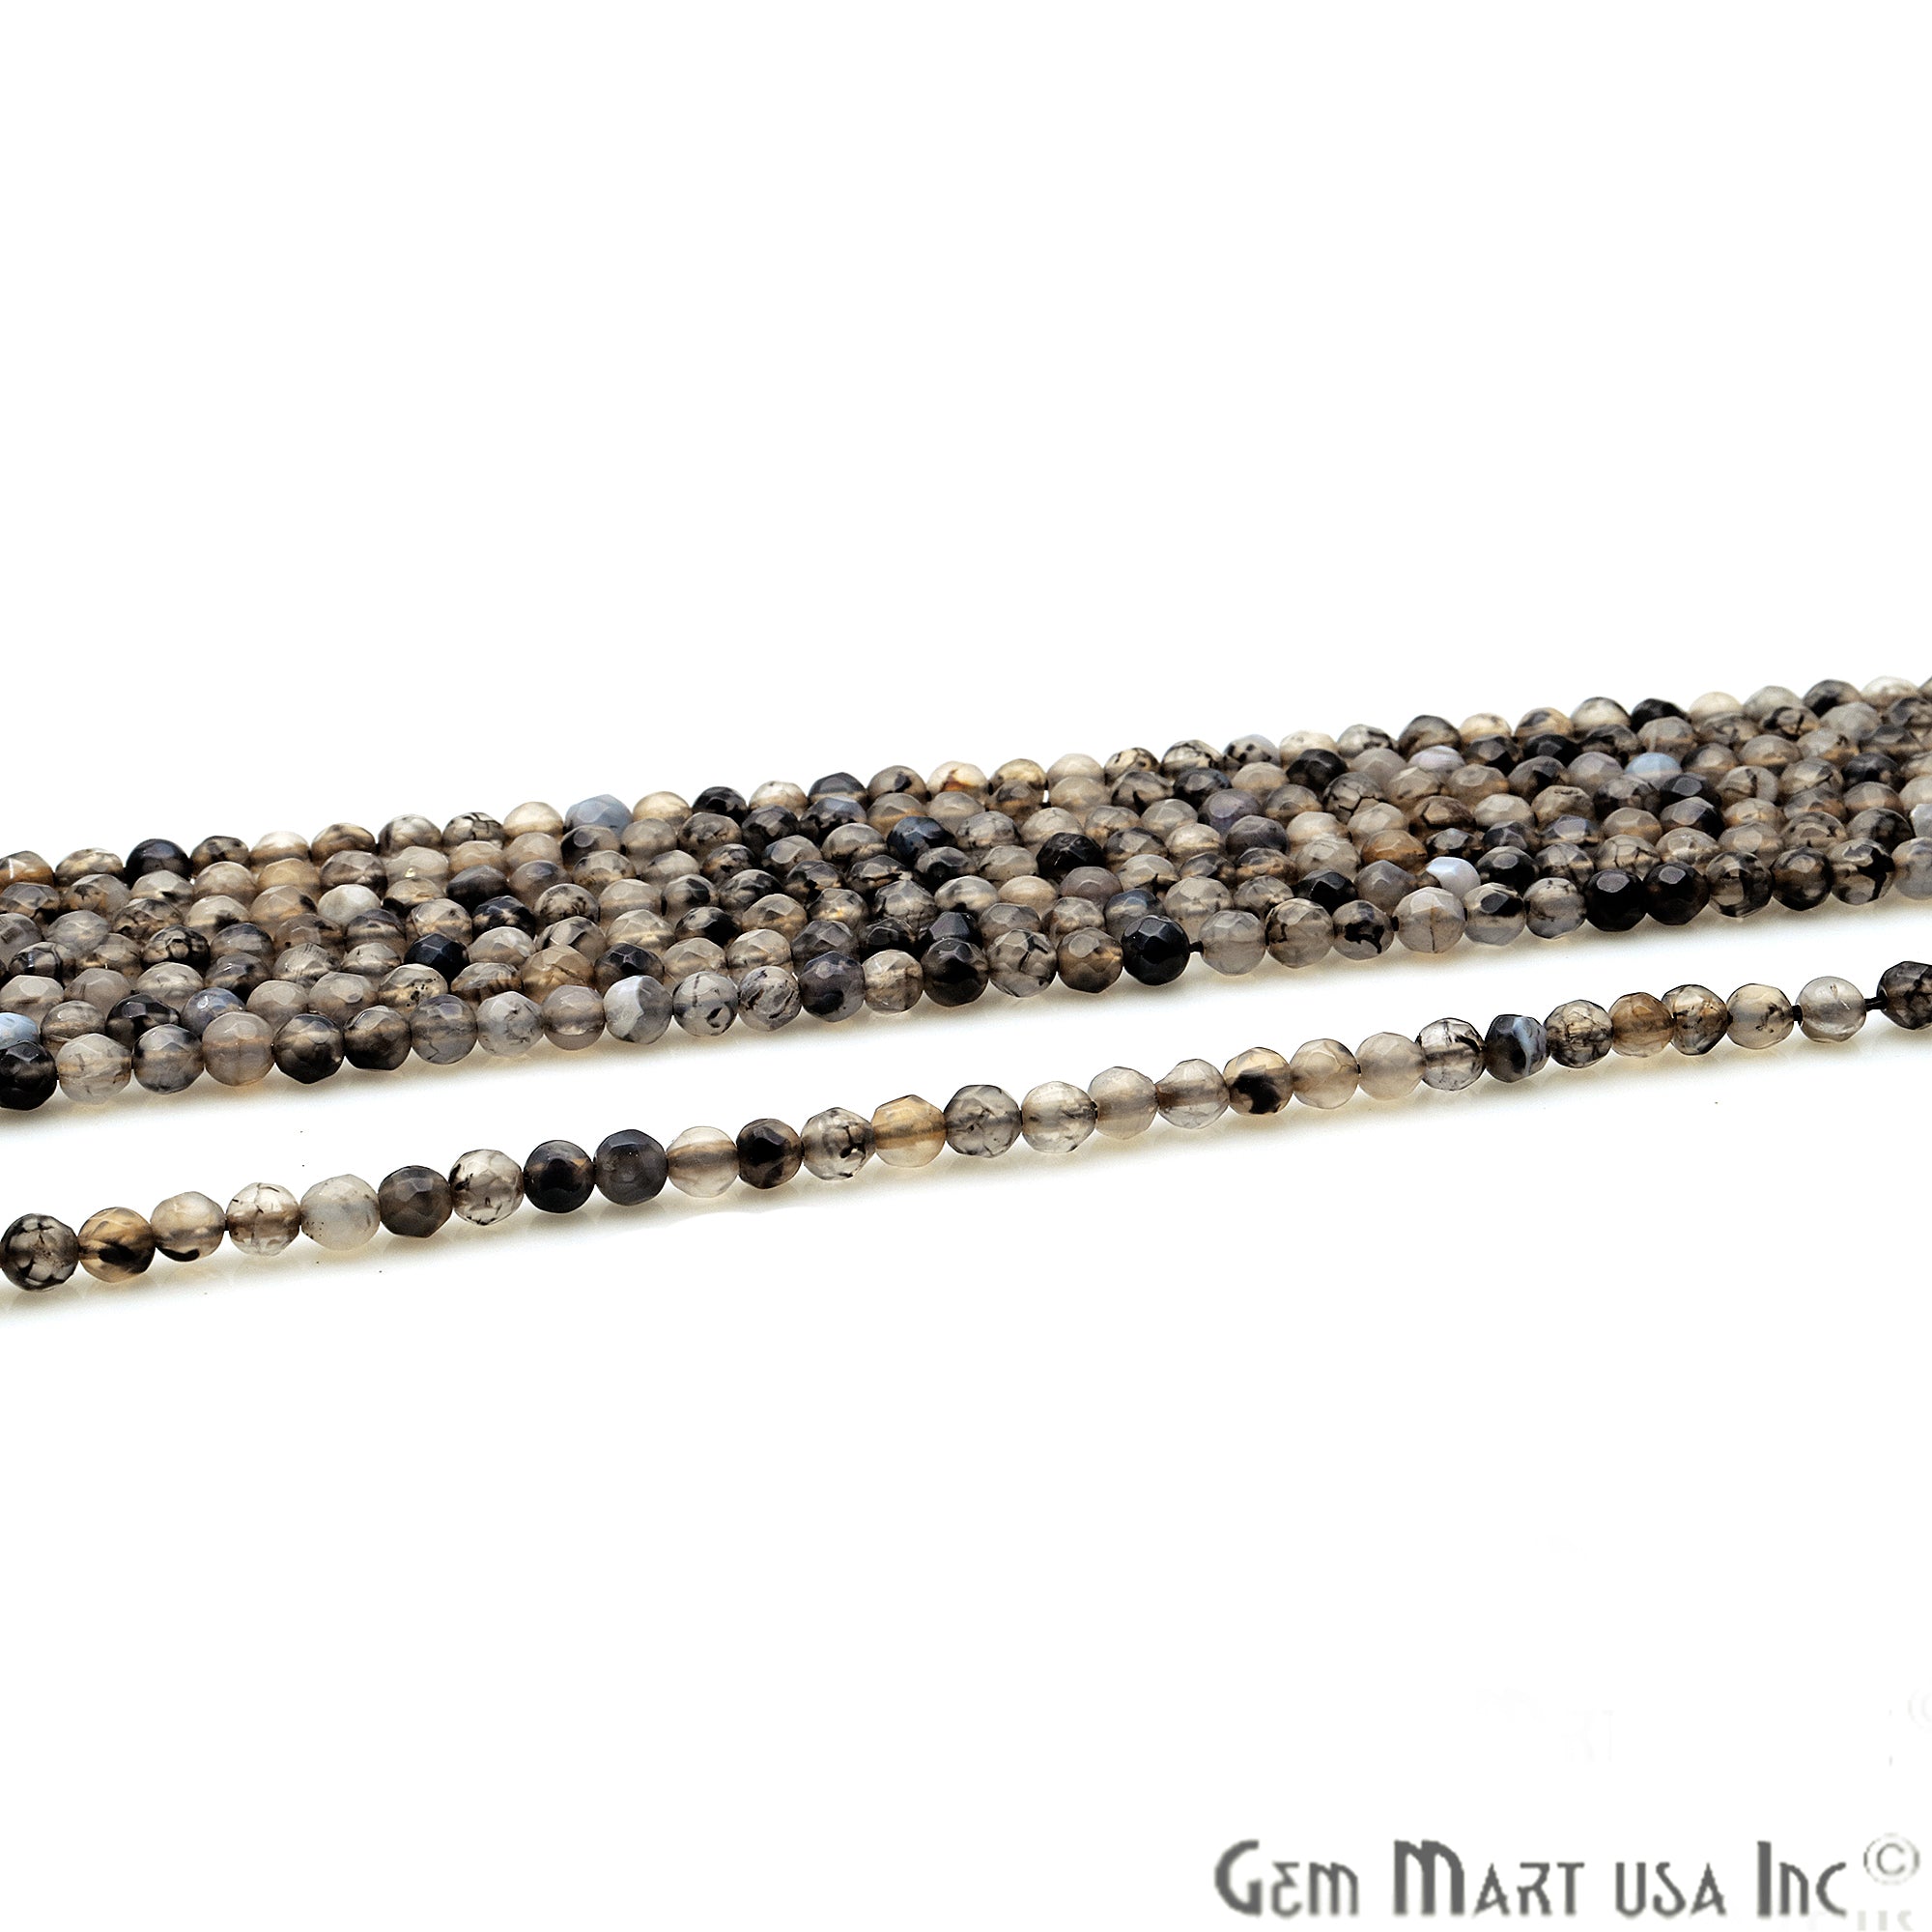 Rutile Jade 3-4mm Faceted Rondelle Beads Strands 14Inch - GemMartUSA